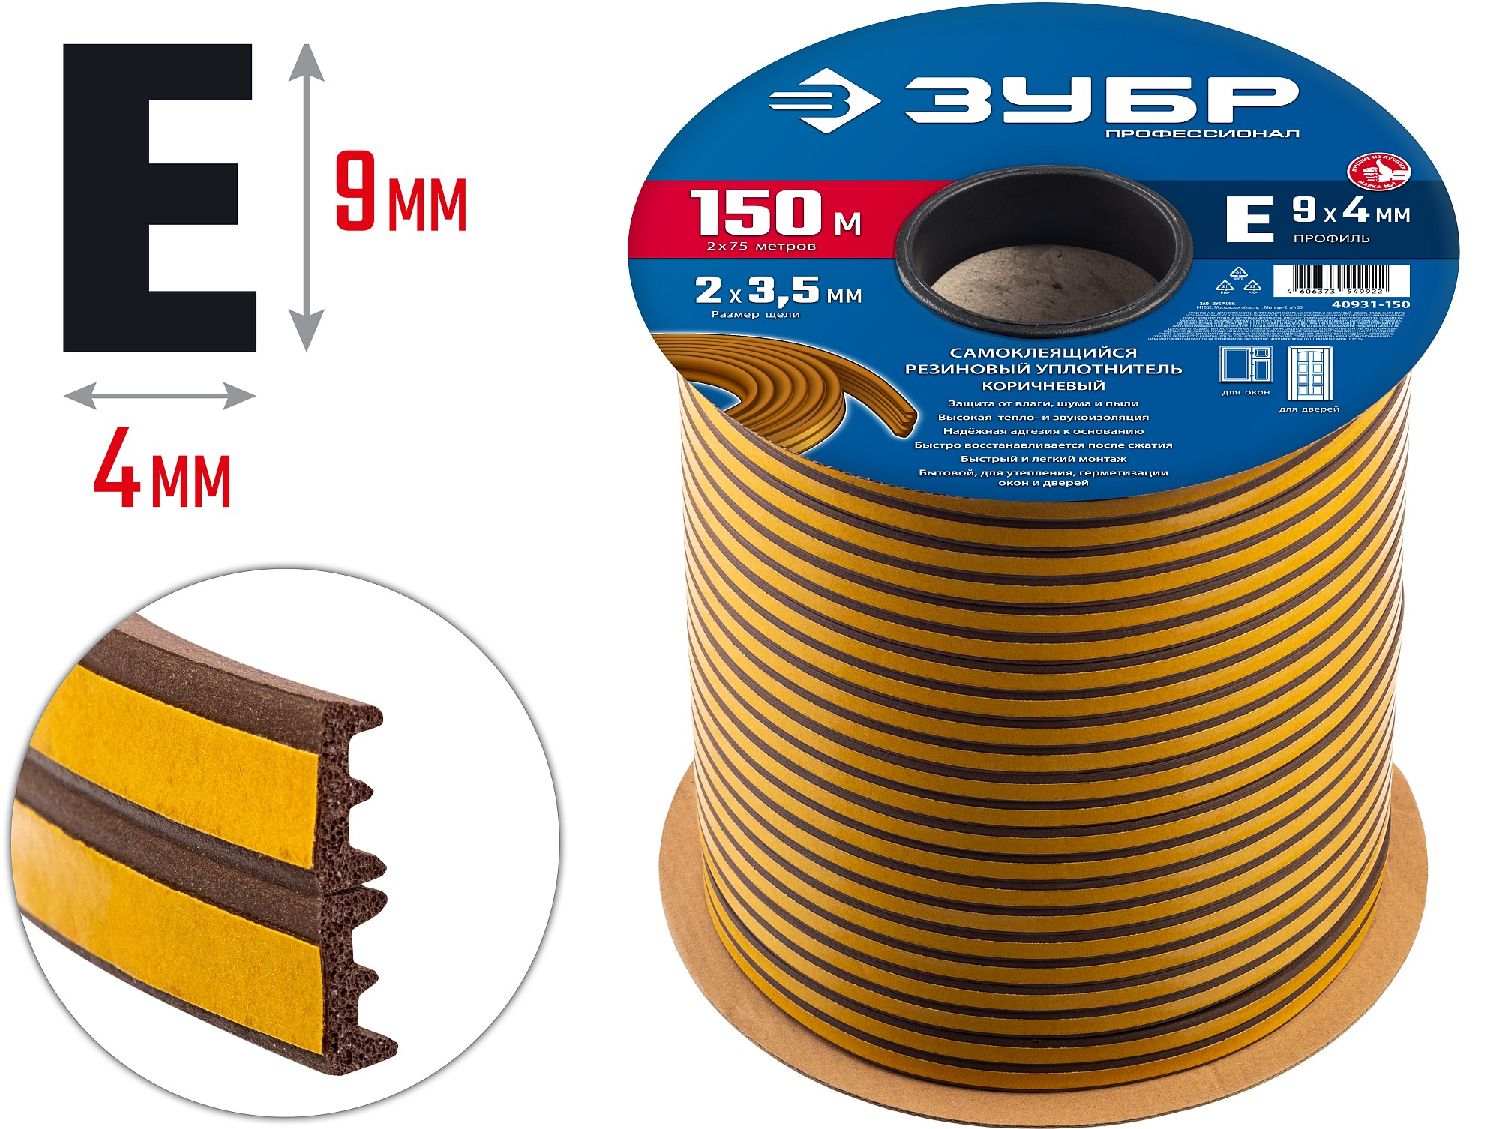 ЗУБР E-профиль, размер 9 х 4мм, коричневый, 150м, самоклеящийся резиновый уплотнитель (40931-150) (40931-150)Купить